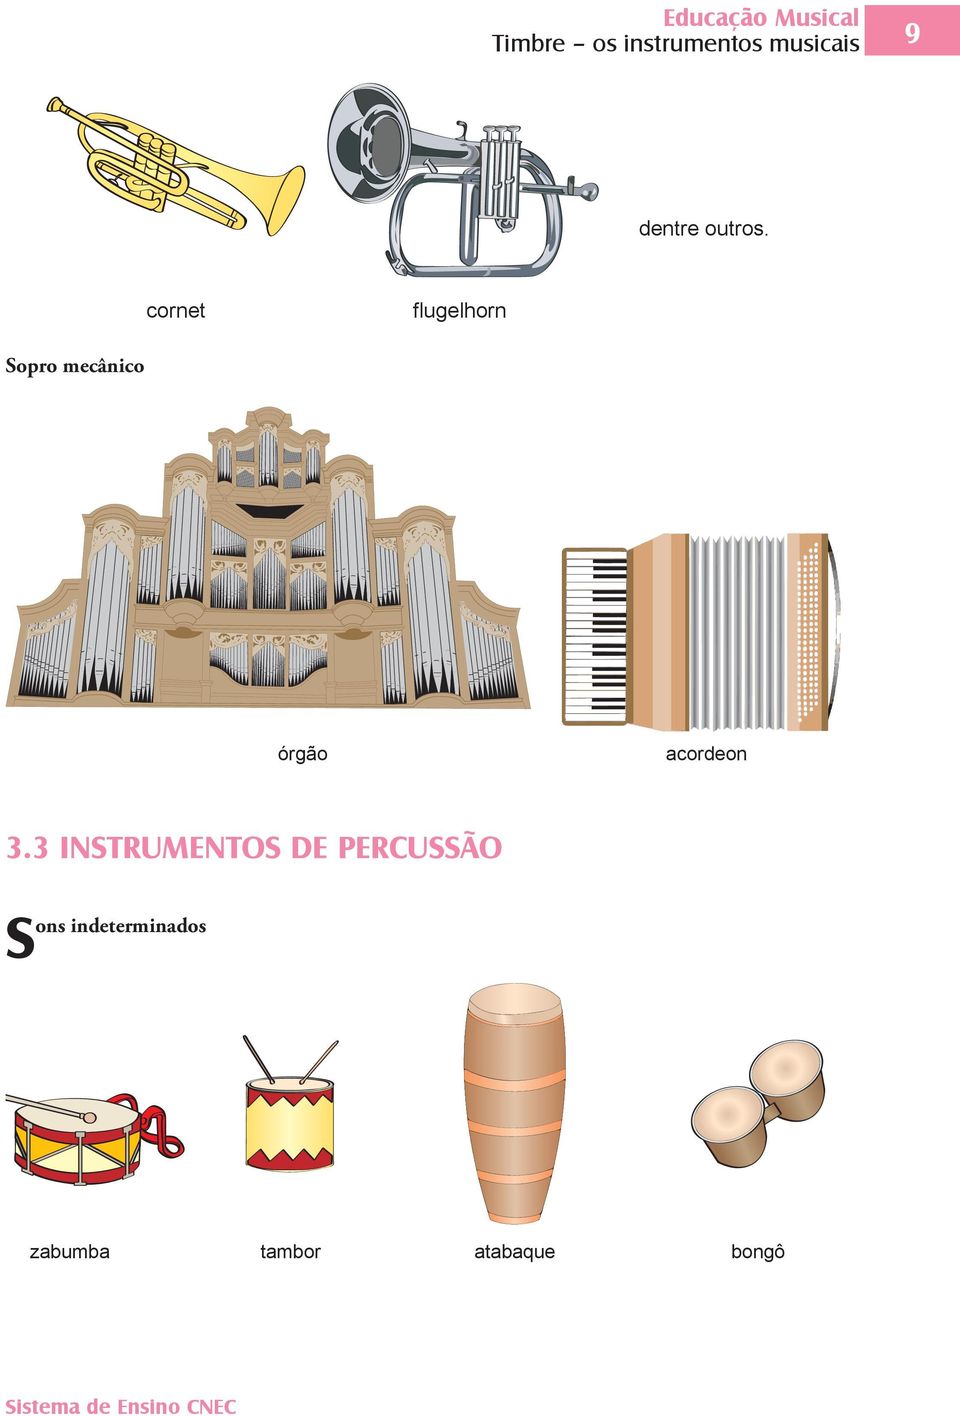 cornet flugelhorn Sopro mecânico órgão acordeon